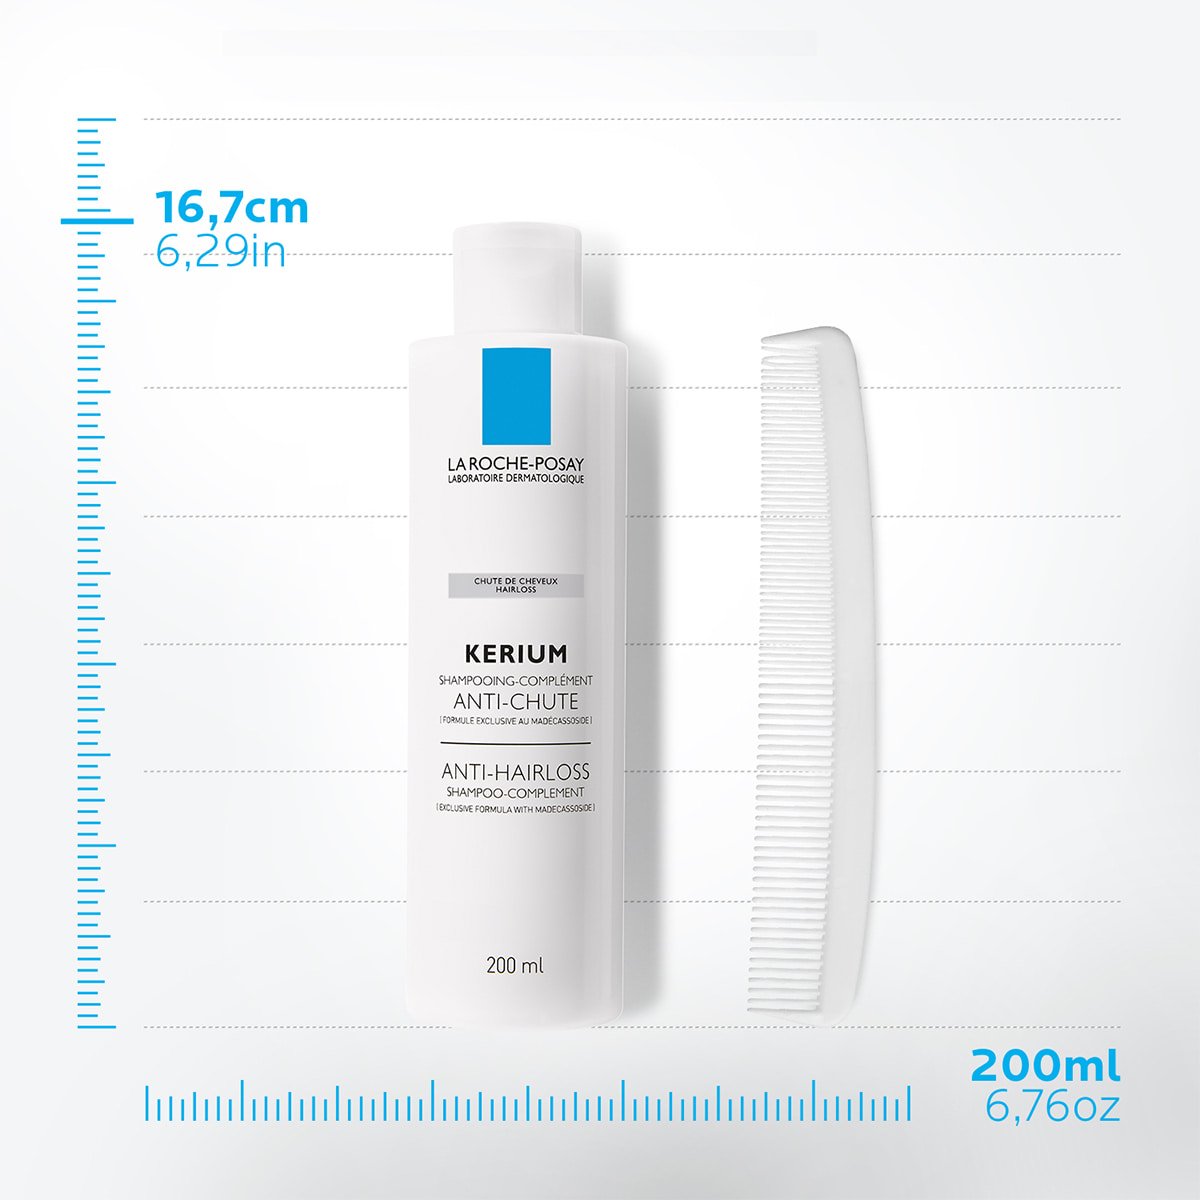 La Roche Posay ProductPage Kerium Anti Hairloss Shampoo 200ml 33378724